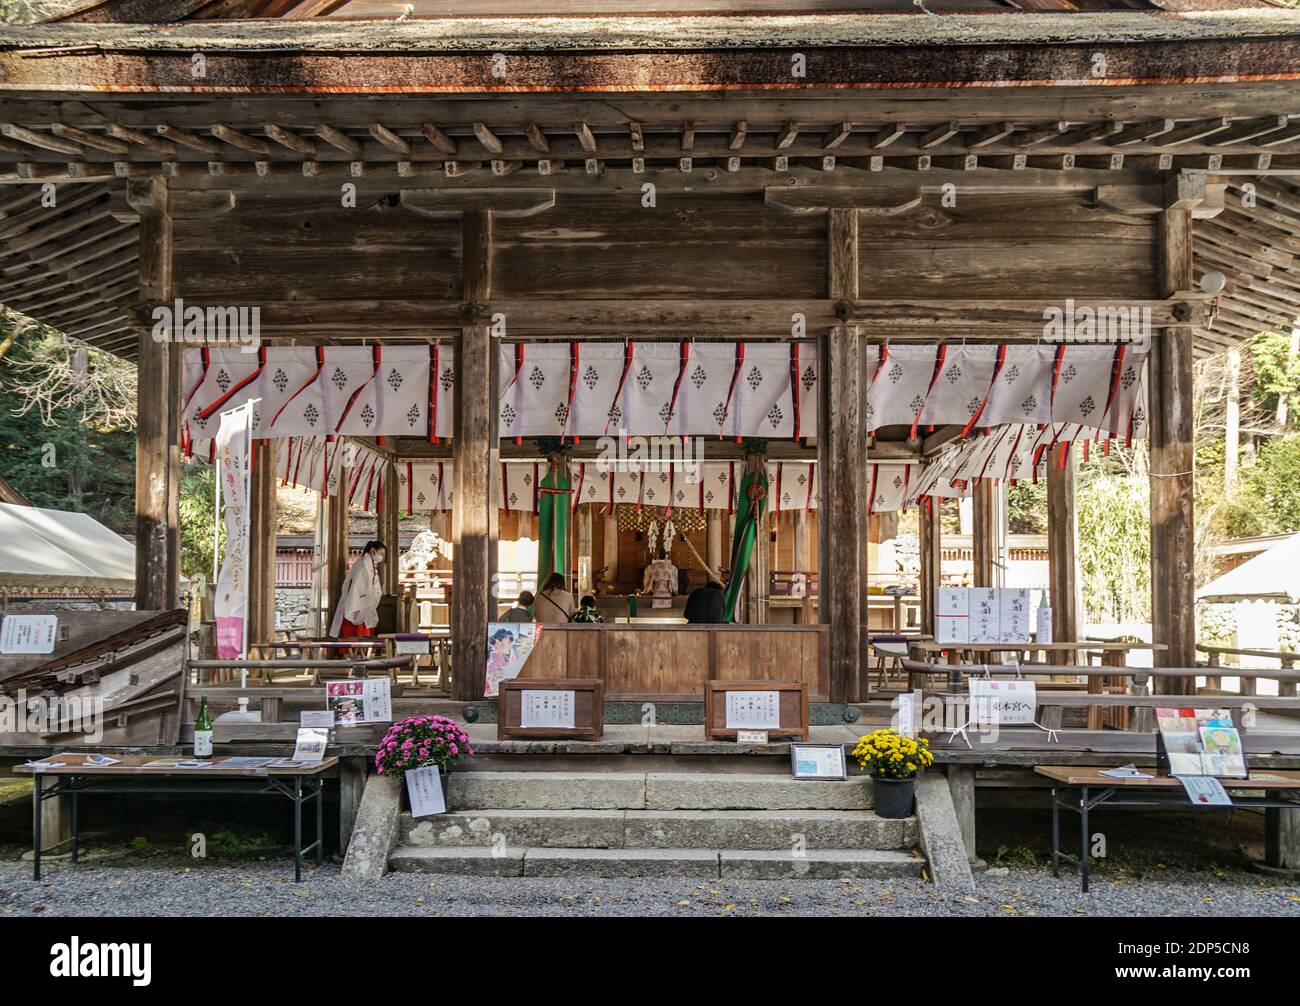 Hiyoshi Taisha, also known as Hiei Taisha, Shinto Shrine in Otsu, Shiga, Japan, at the foot of Mount Hiei Stock Photo